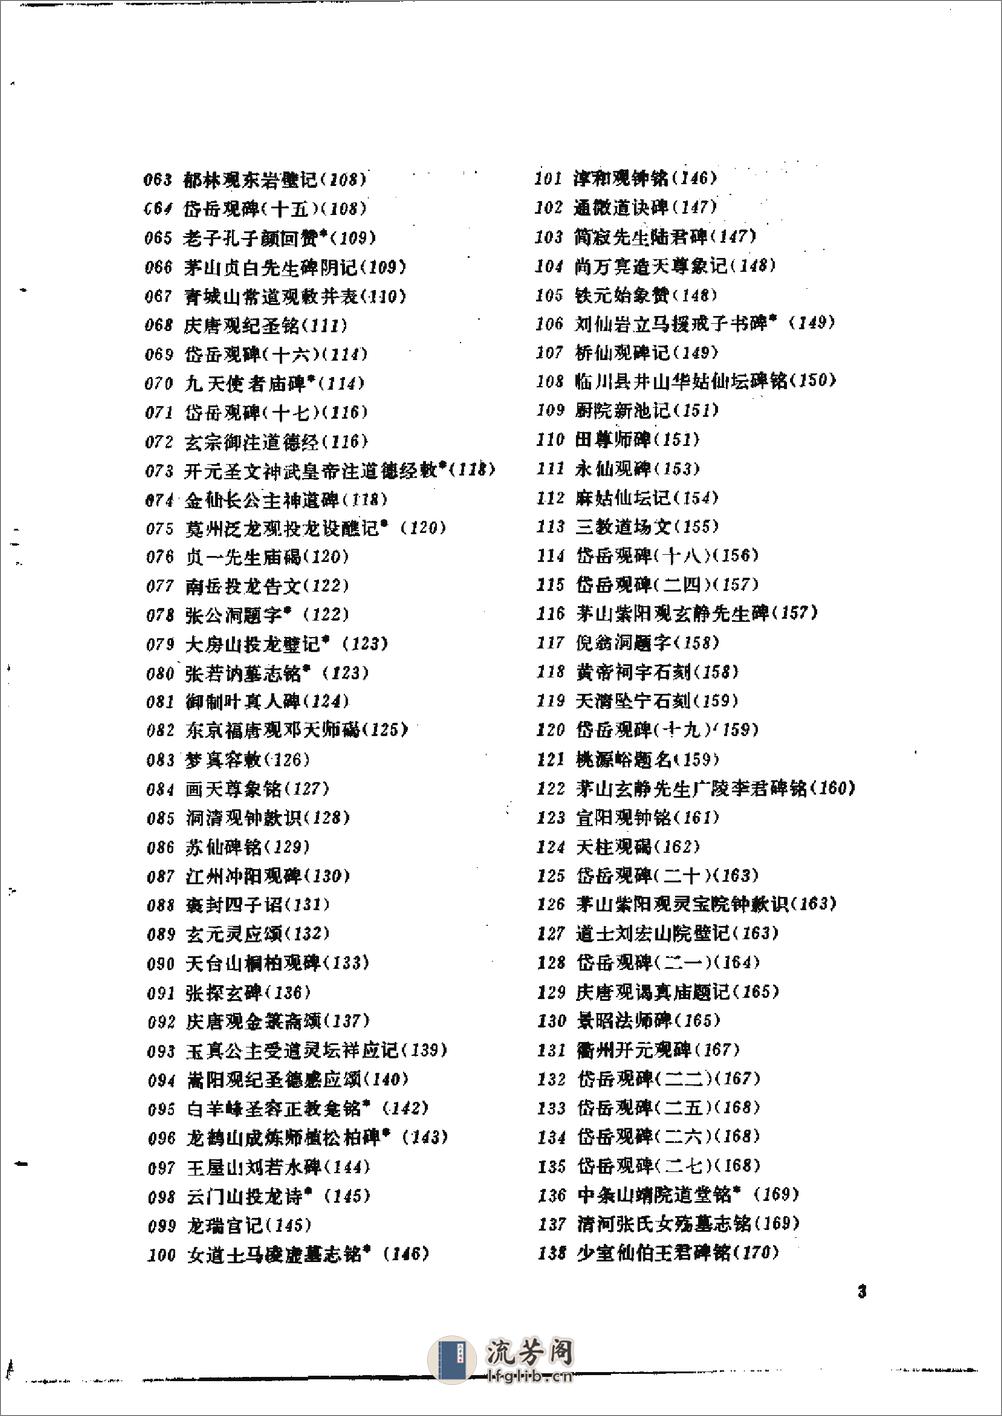 道家金石略 - 陈垣-文物出版社 - 第14页预览图